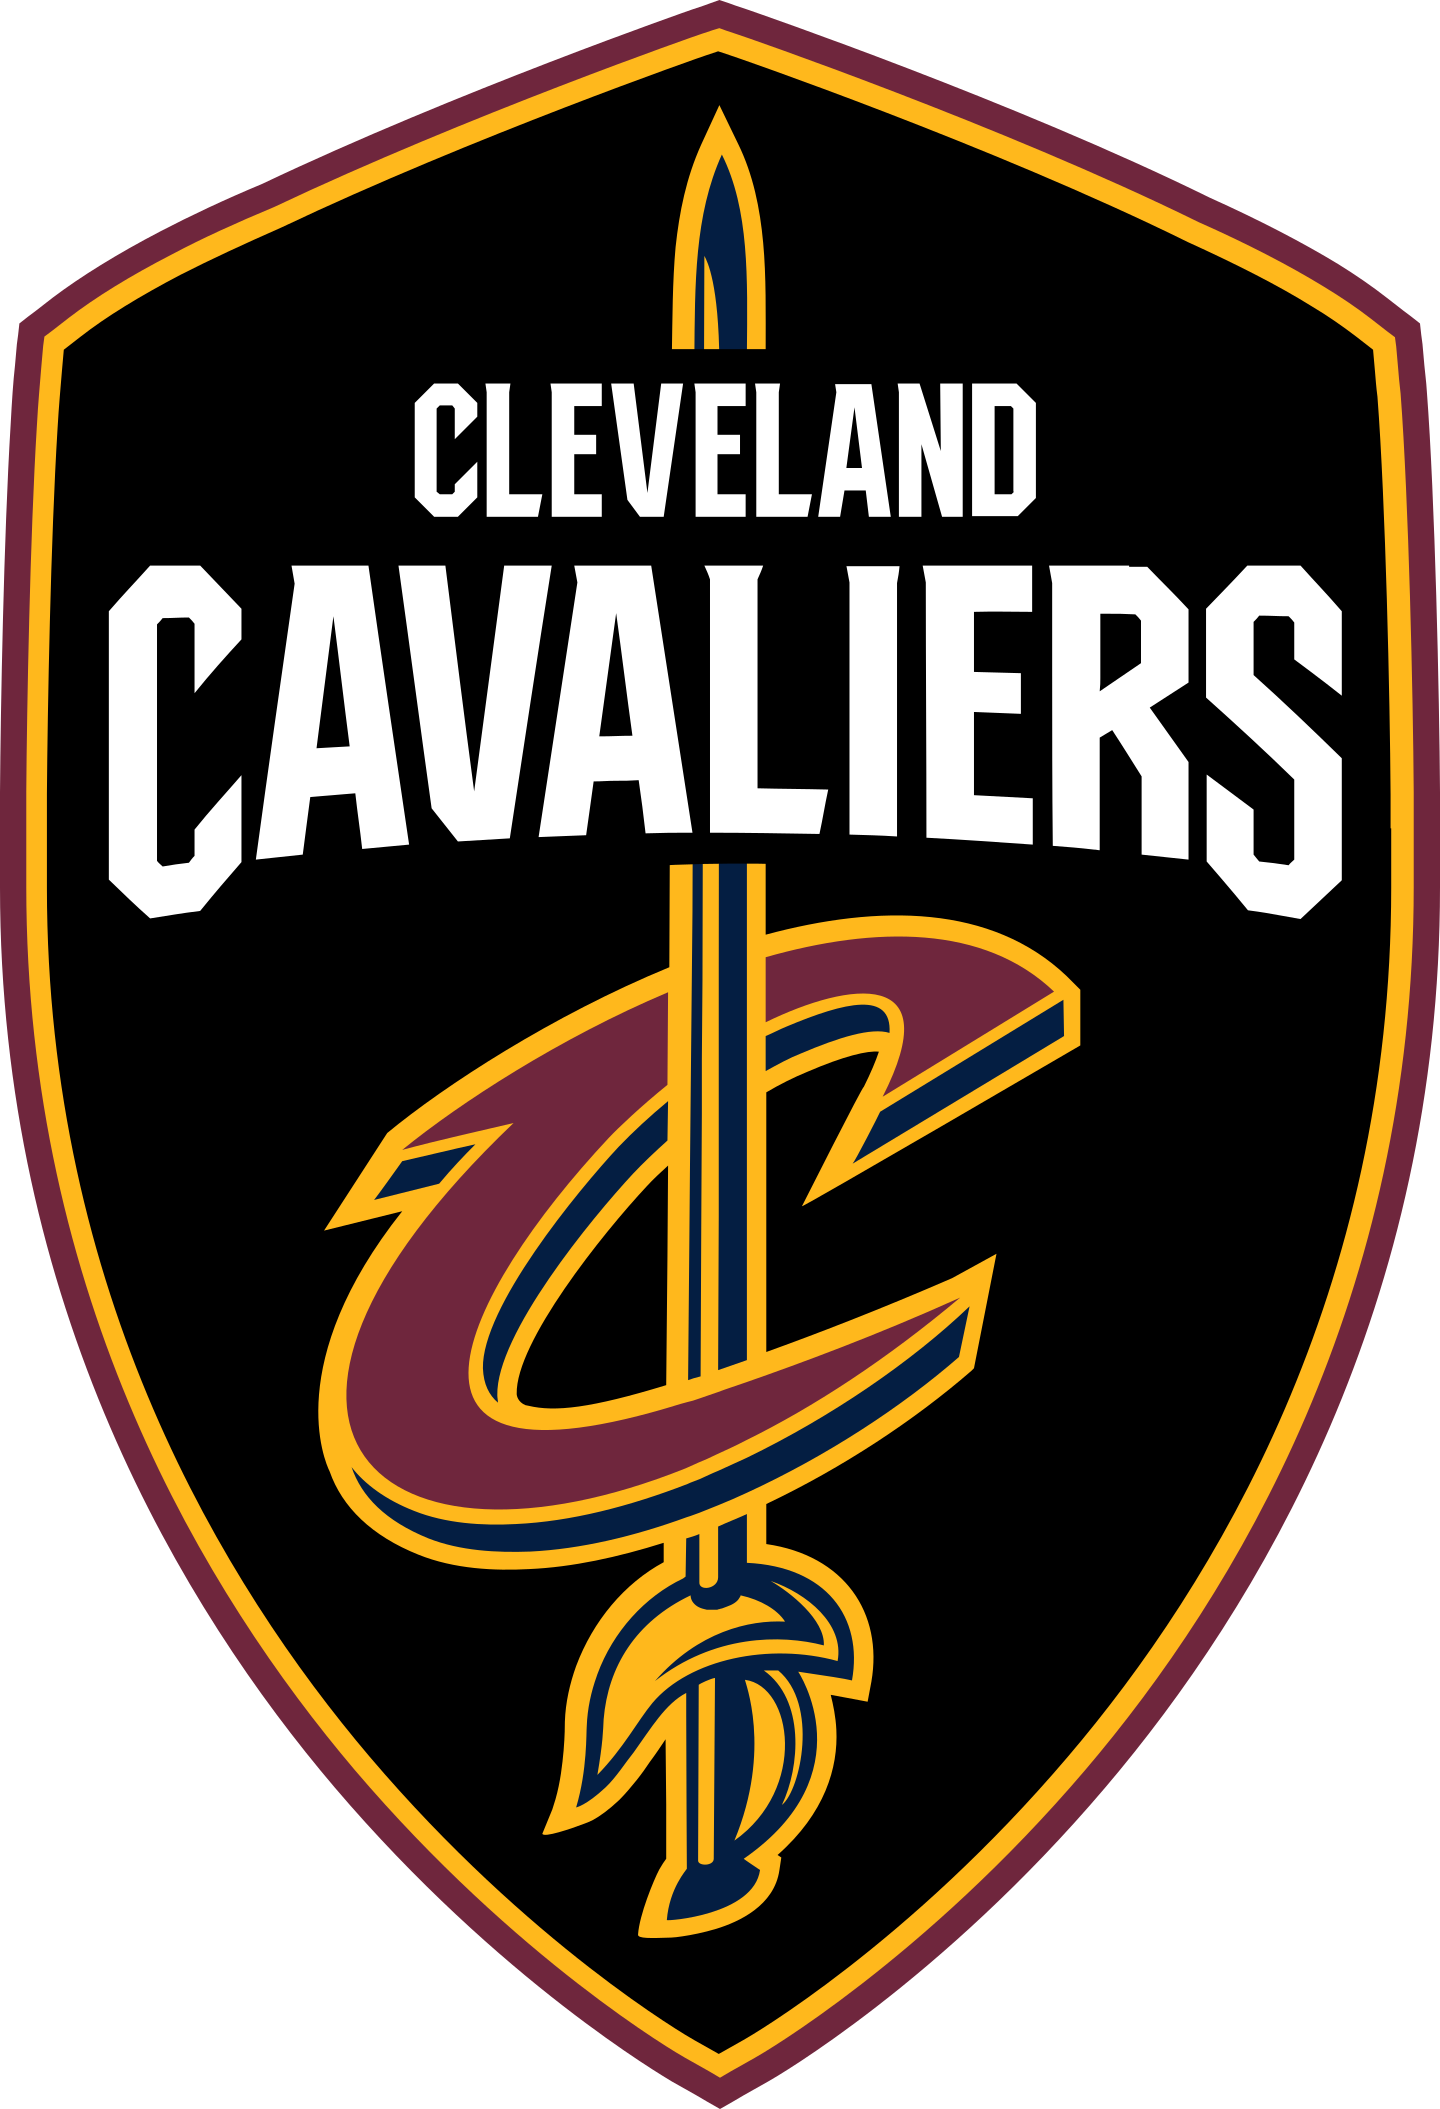 cleveland cavaliers logo 7 - Cleveland Cavaliers Logo